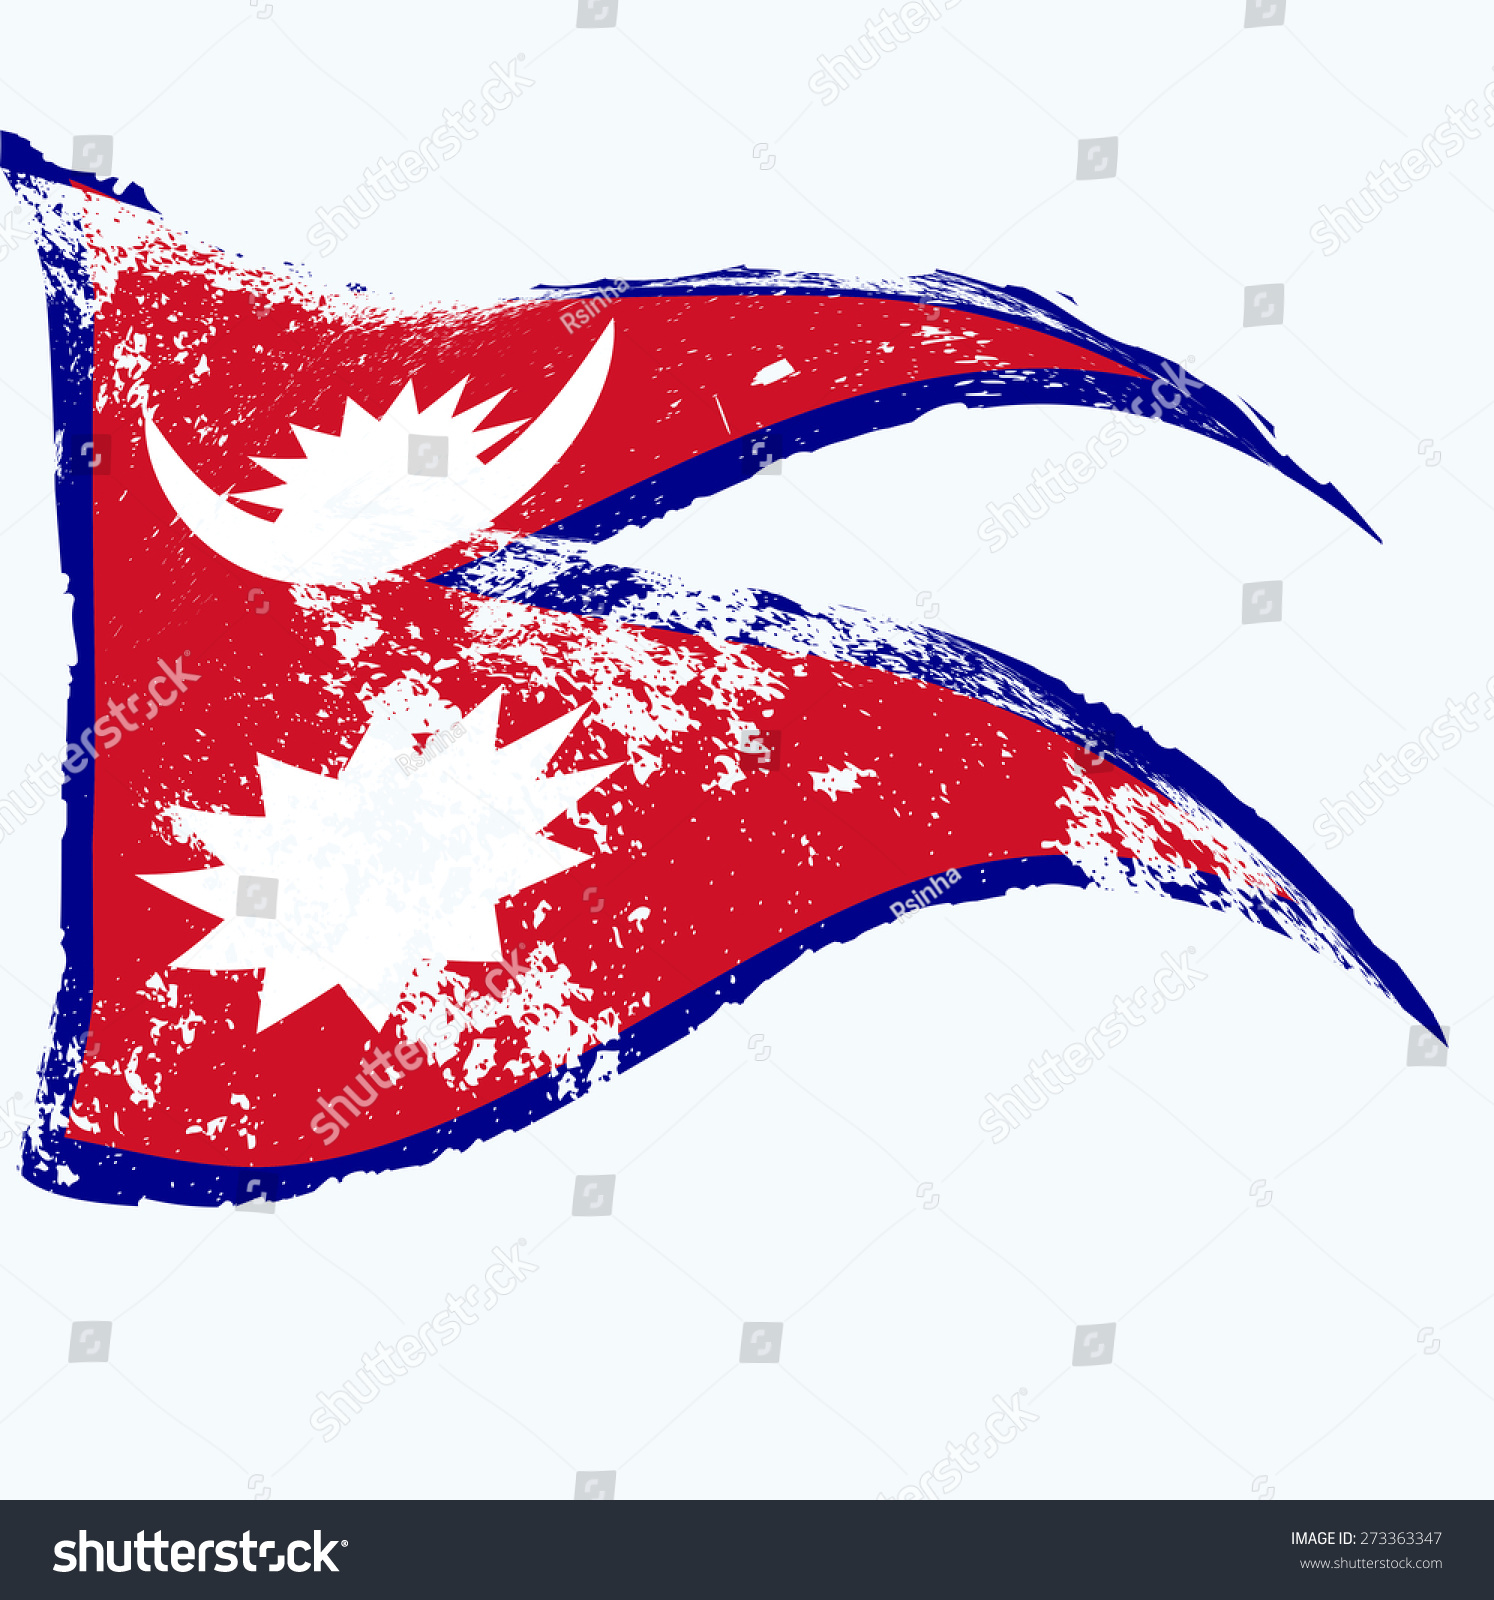 Nepal Flag Grunge Stock Vector (2018) 273363347 - Shutterstock